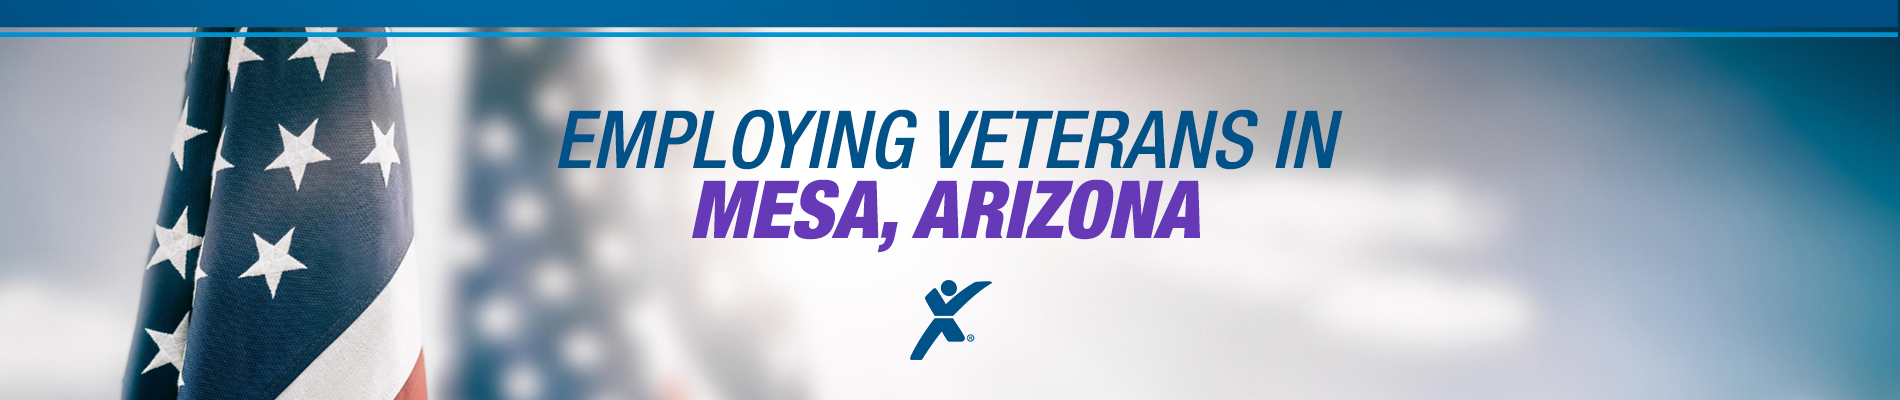 Career Options for Veterans in Mesa, Arizona - (480) 820-3700